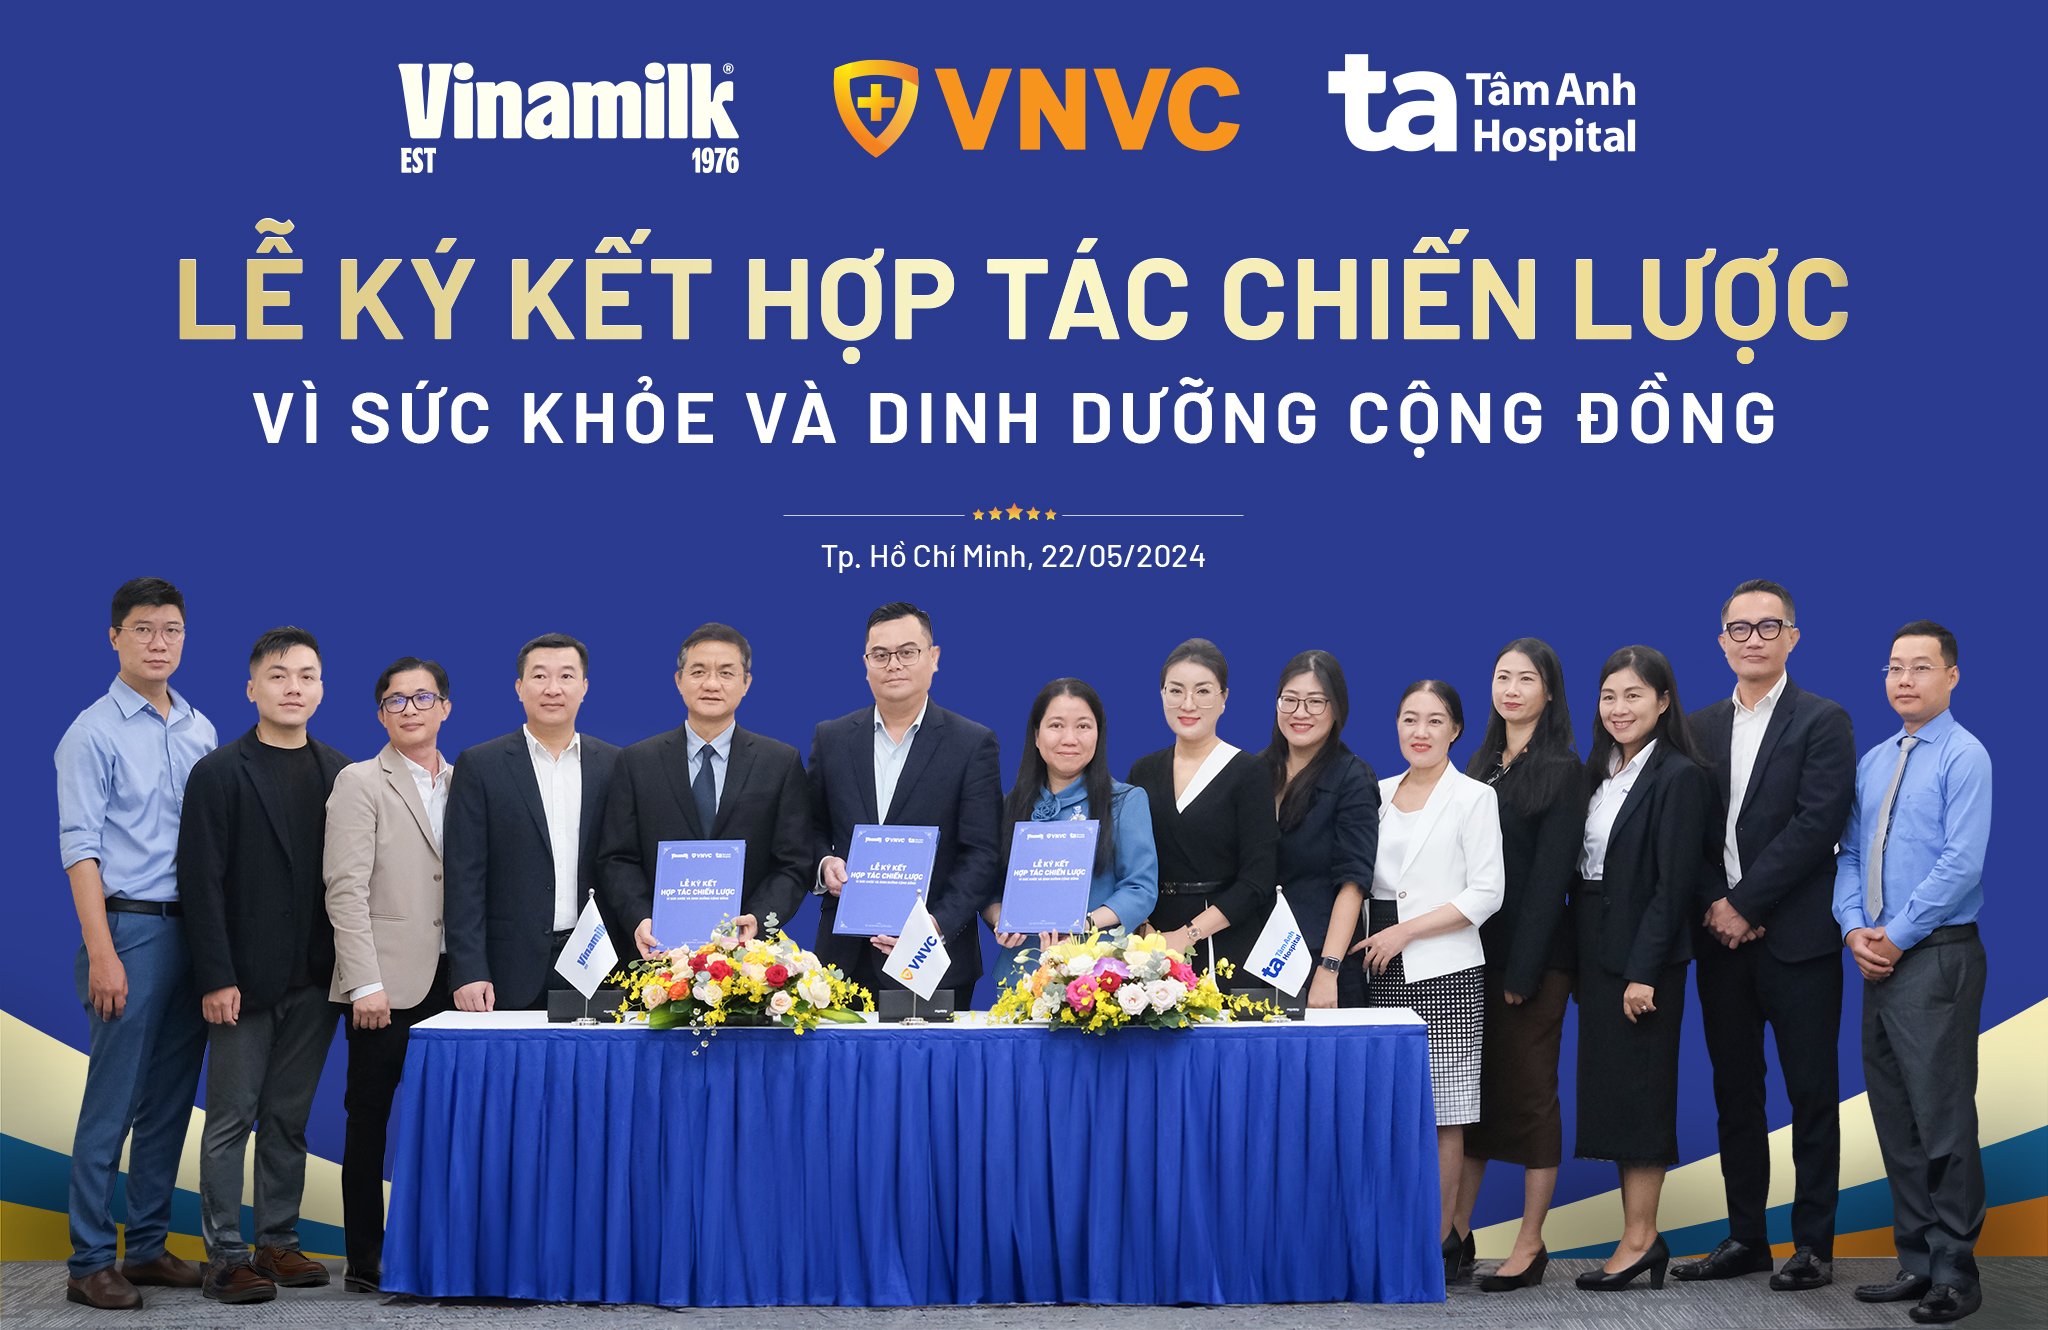 Vinamilk ký hợp tác chiến lược cùng VNVC, Bệnh viện Tâm Anh để tăng cường chăm sóc sức khỏe cộng đồng- Ảnh 1.